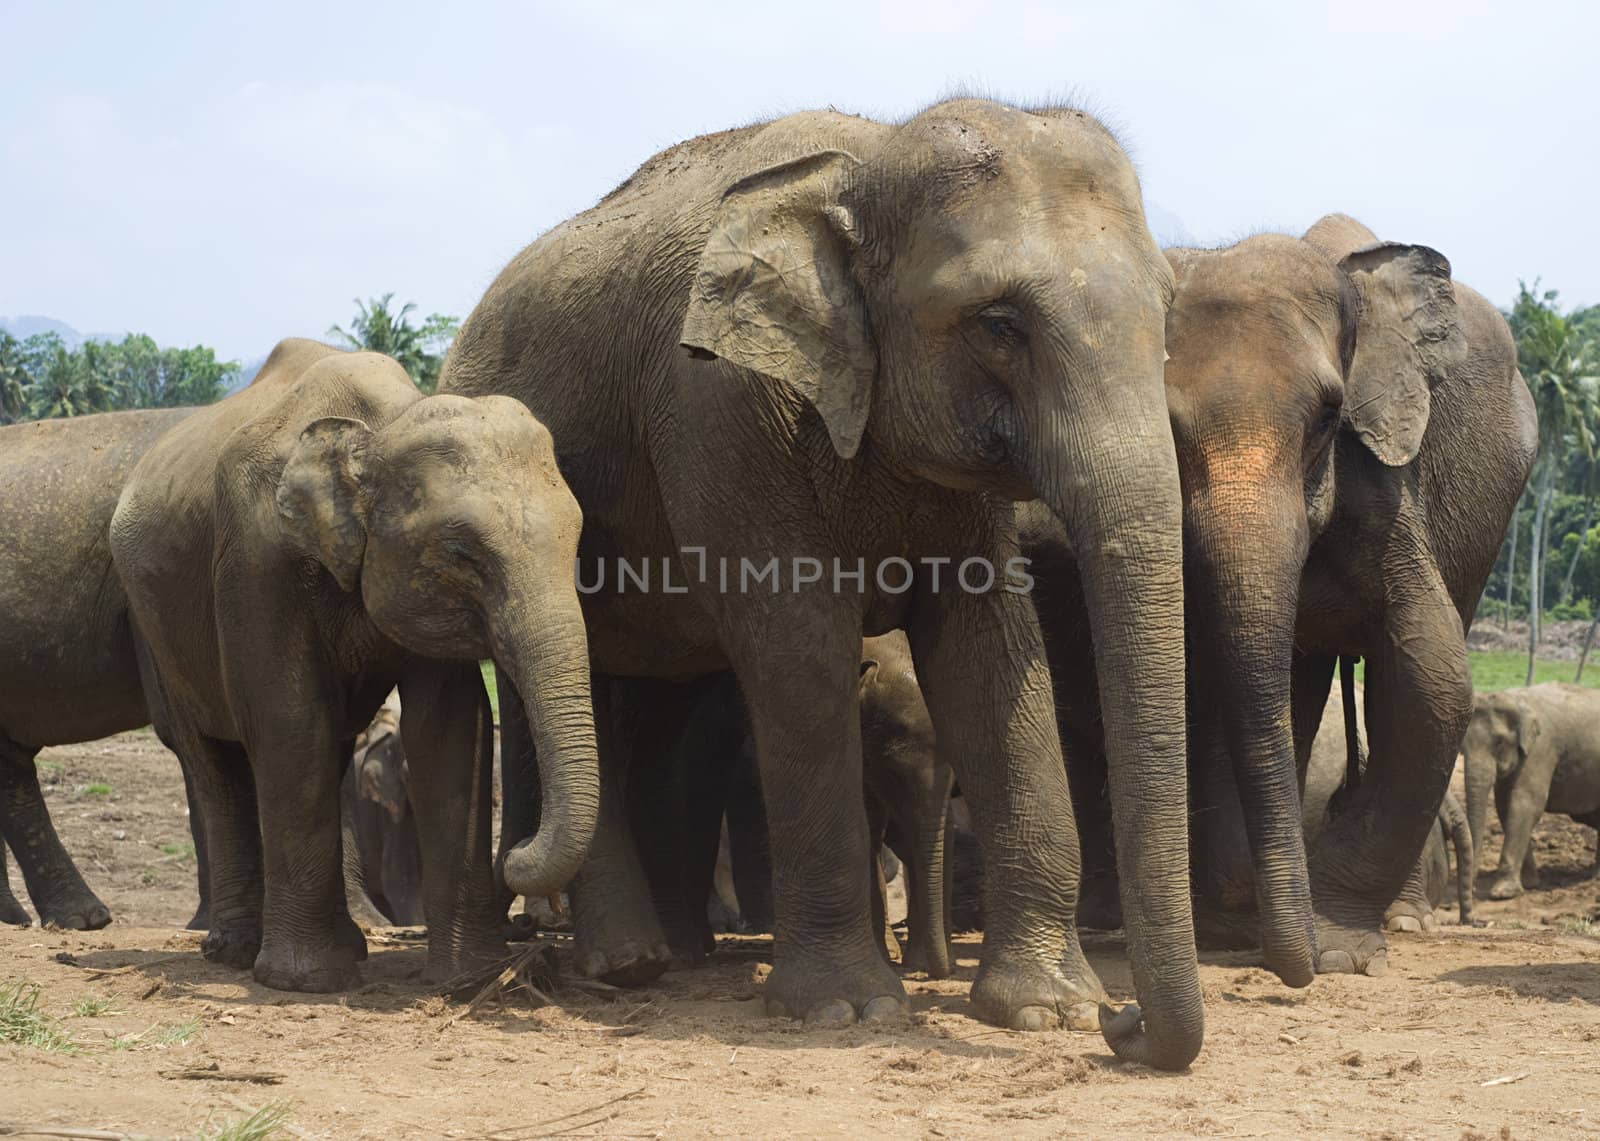 Elephants at Elephant Orphanage in Pinnawela, Sri Lanka